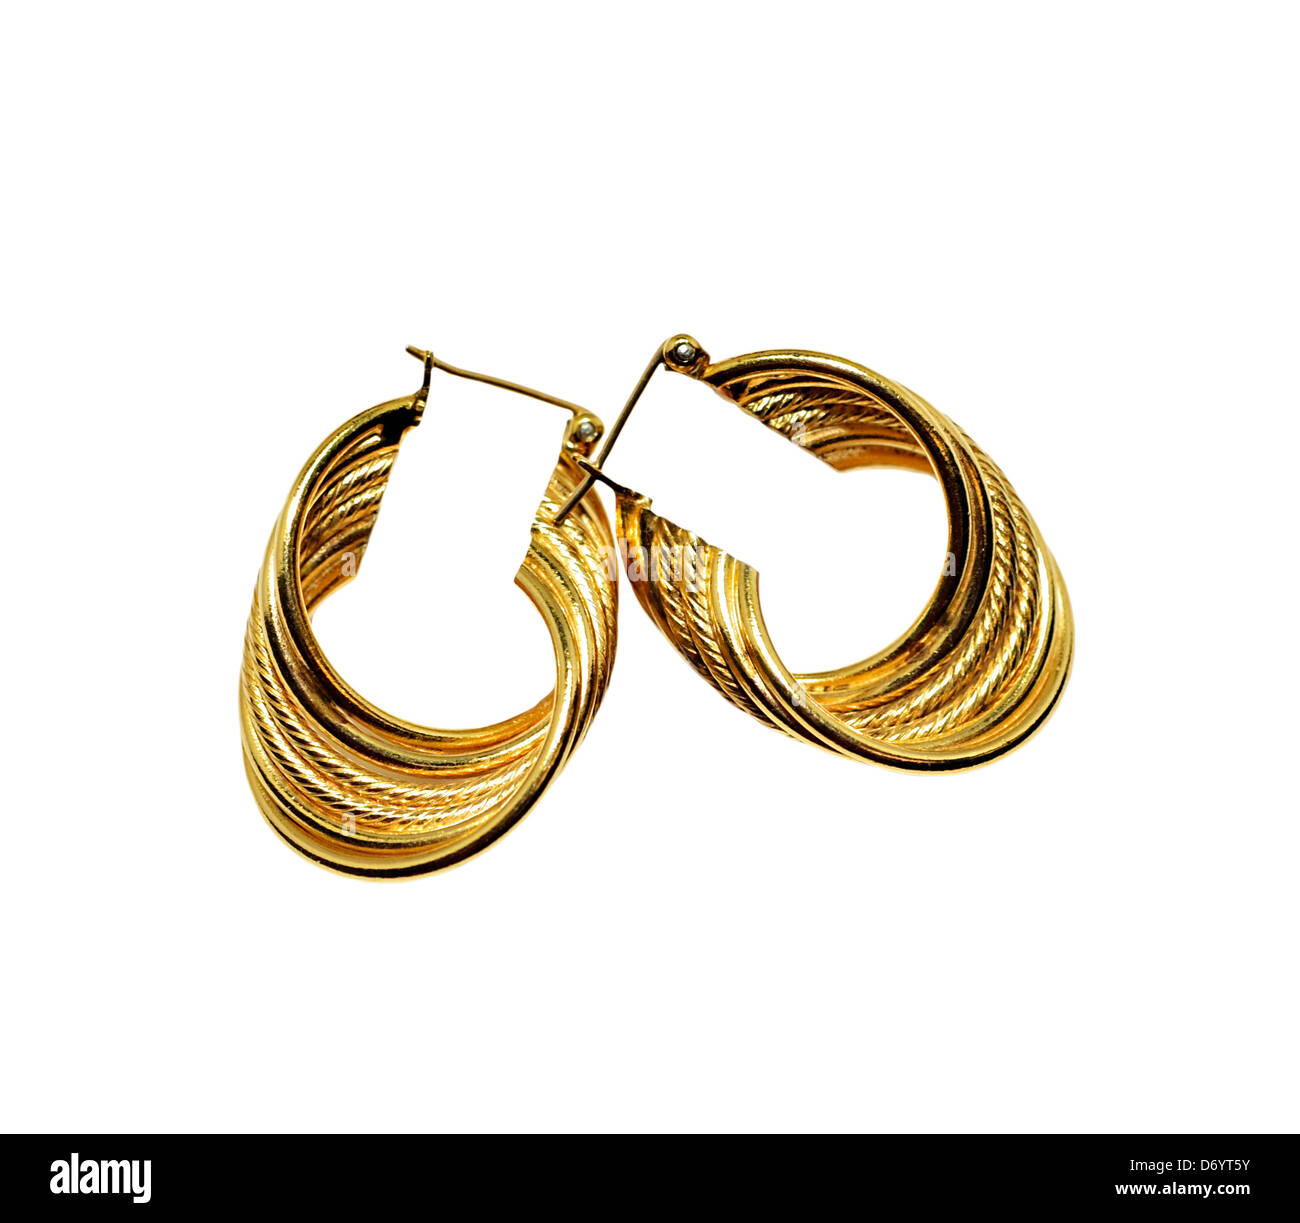 Stylish round gold earrings on white background. Stock Photo